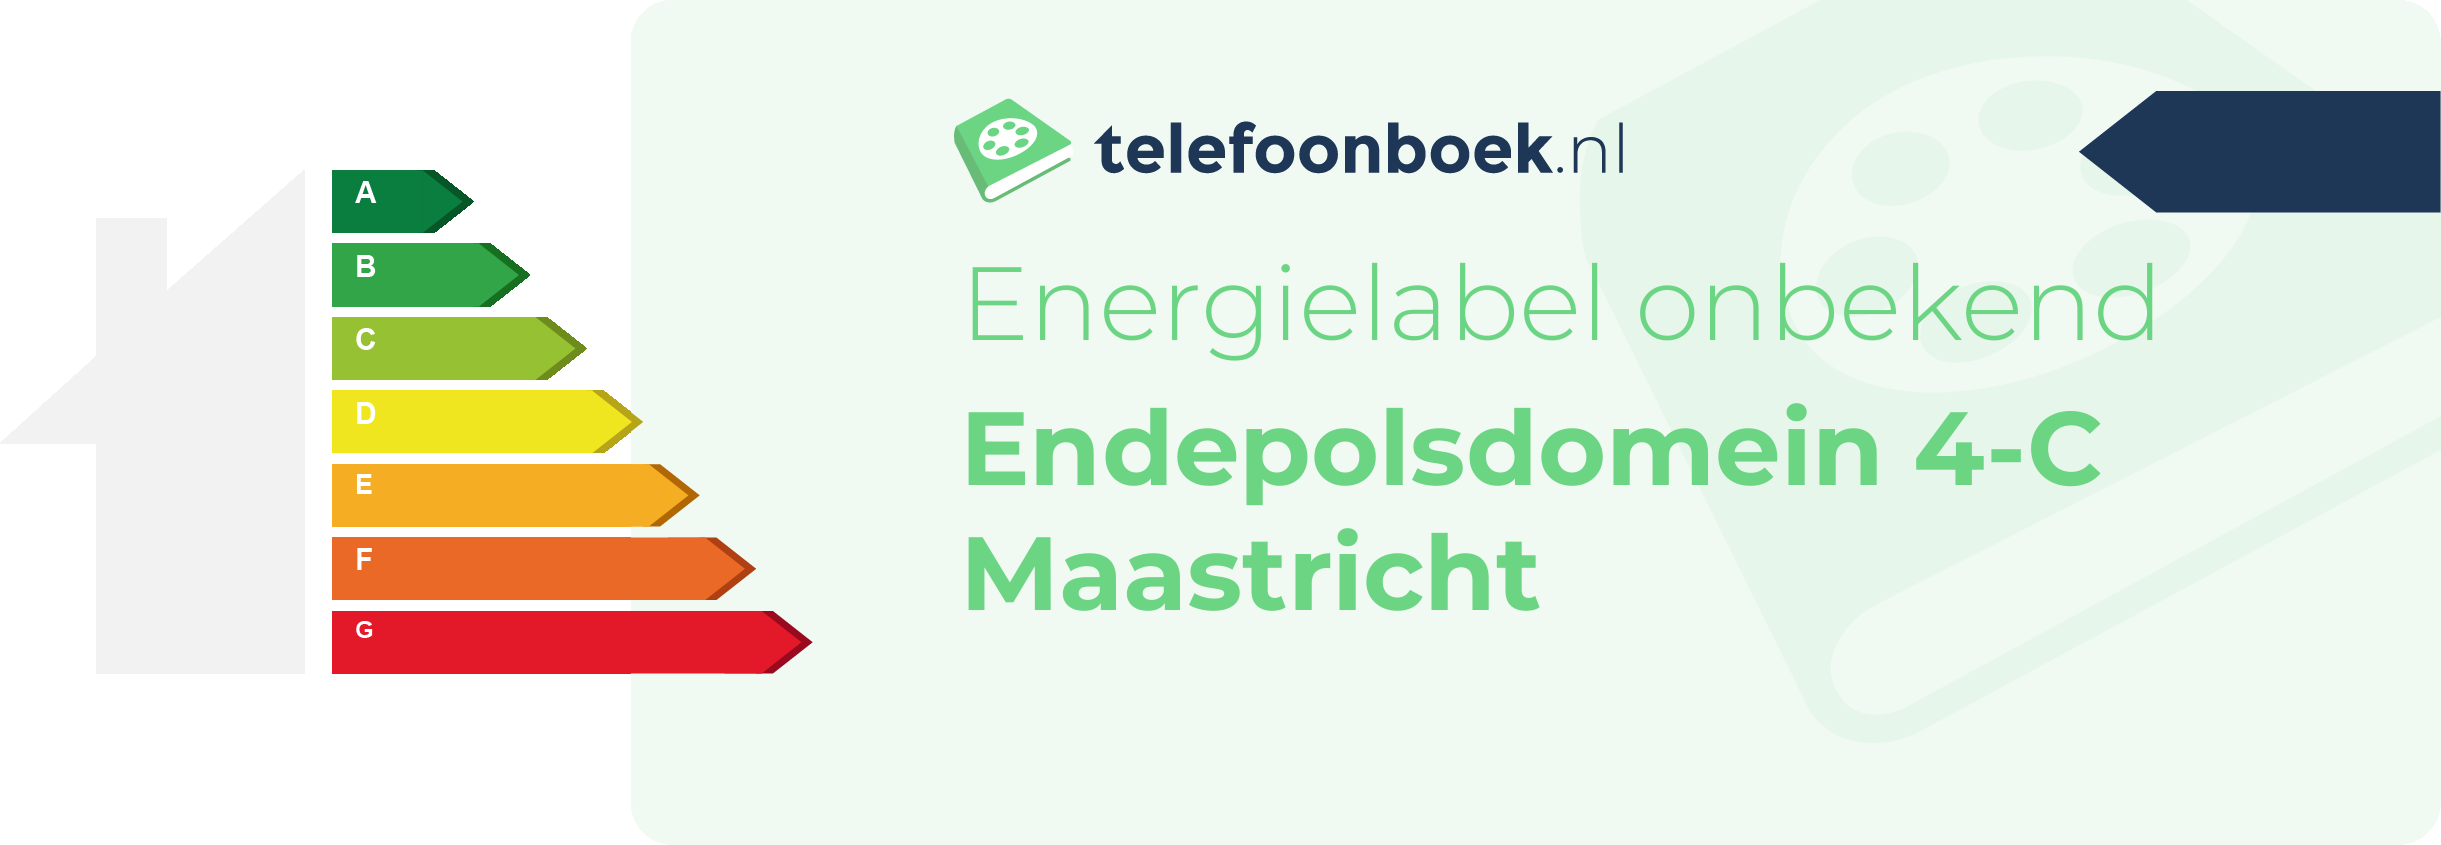 Energielabel Endepolsdomein 4-C Maastricht